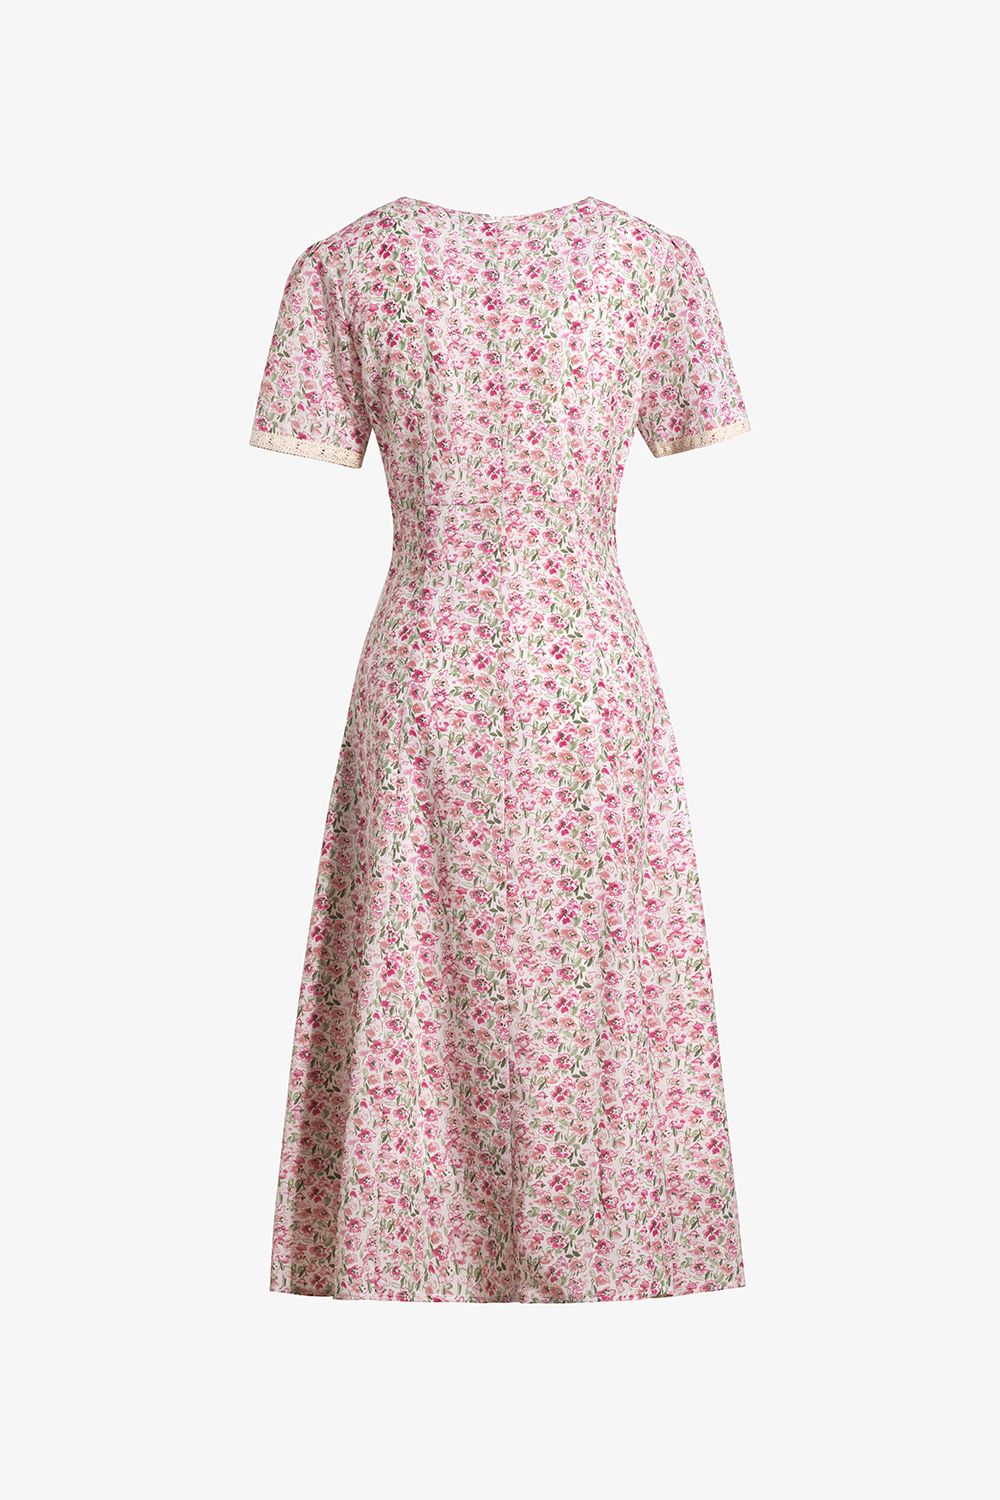 Chân váy hoa nhí dáng dài - Chân váy dài vintage - Chân Váy Midi hoa nhí  Phong Cách Hàn Quốc trẻ trung BeeMit | Lazada.vn